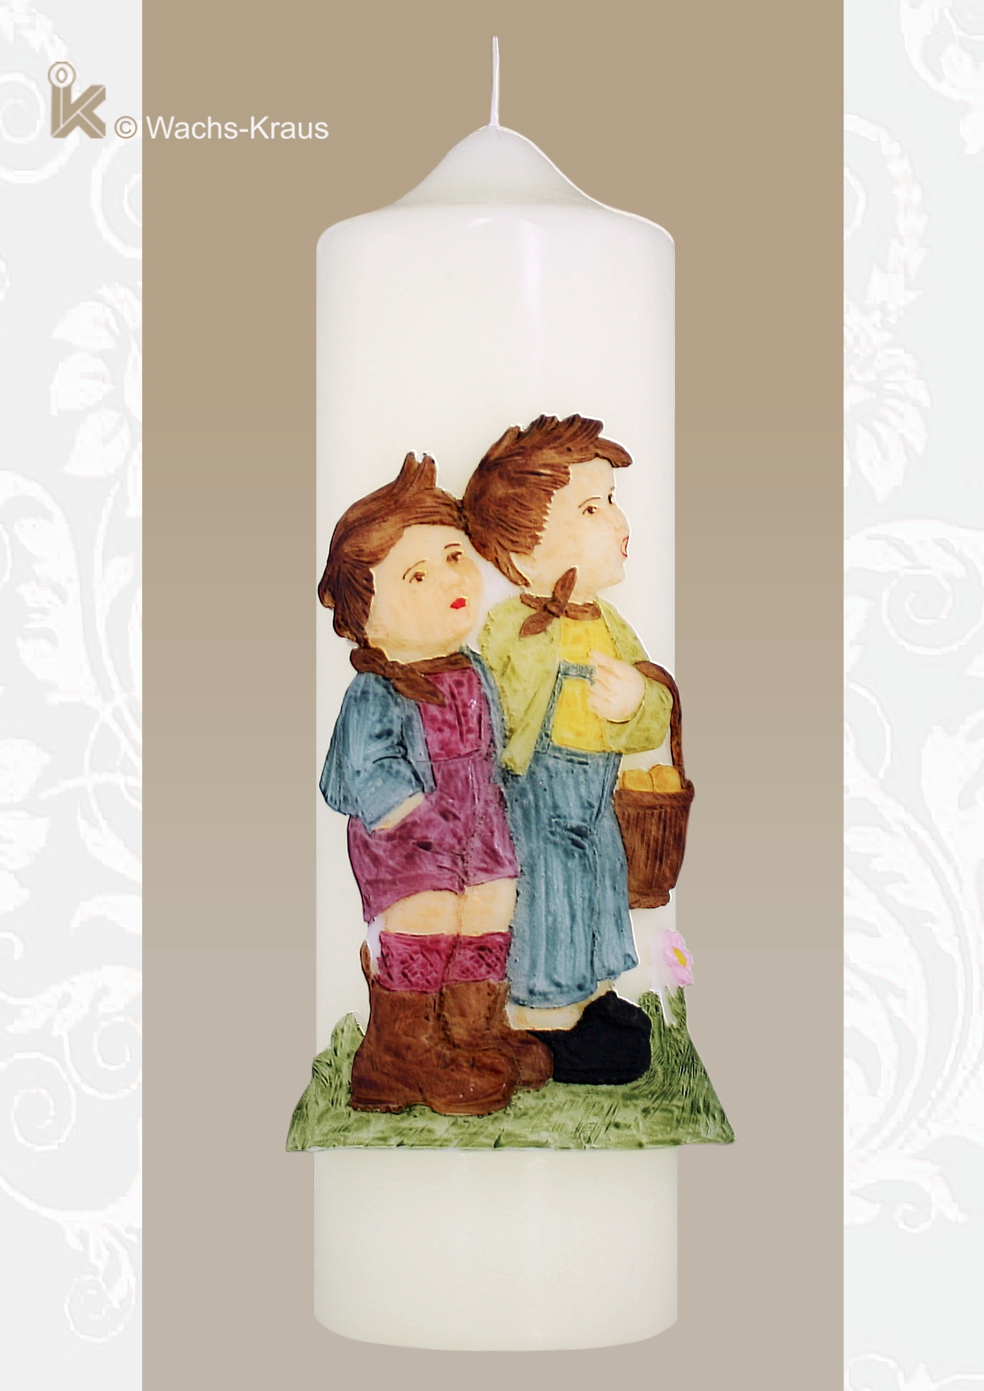 Ein schönes Geschenk für Sammler und Liebhaber von Hummel-Figuren ist diese im Hummel-Stil gehaltene Geschenkkerze zwei Jungen